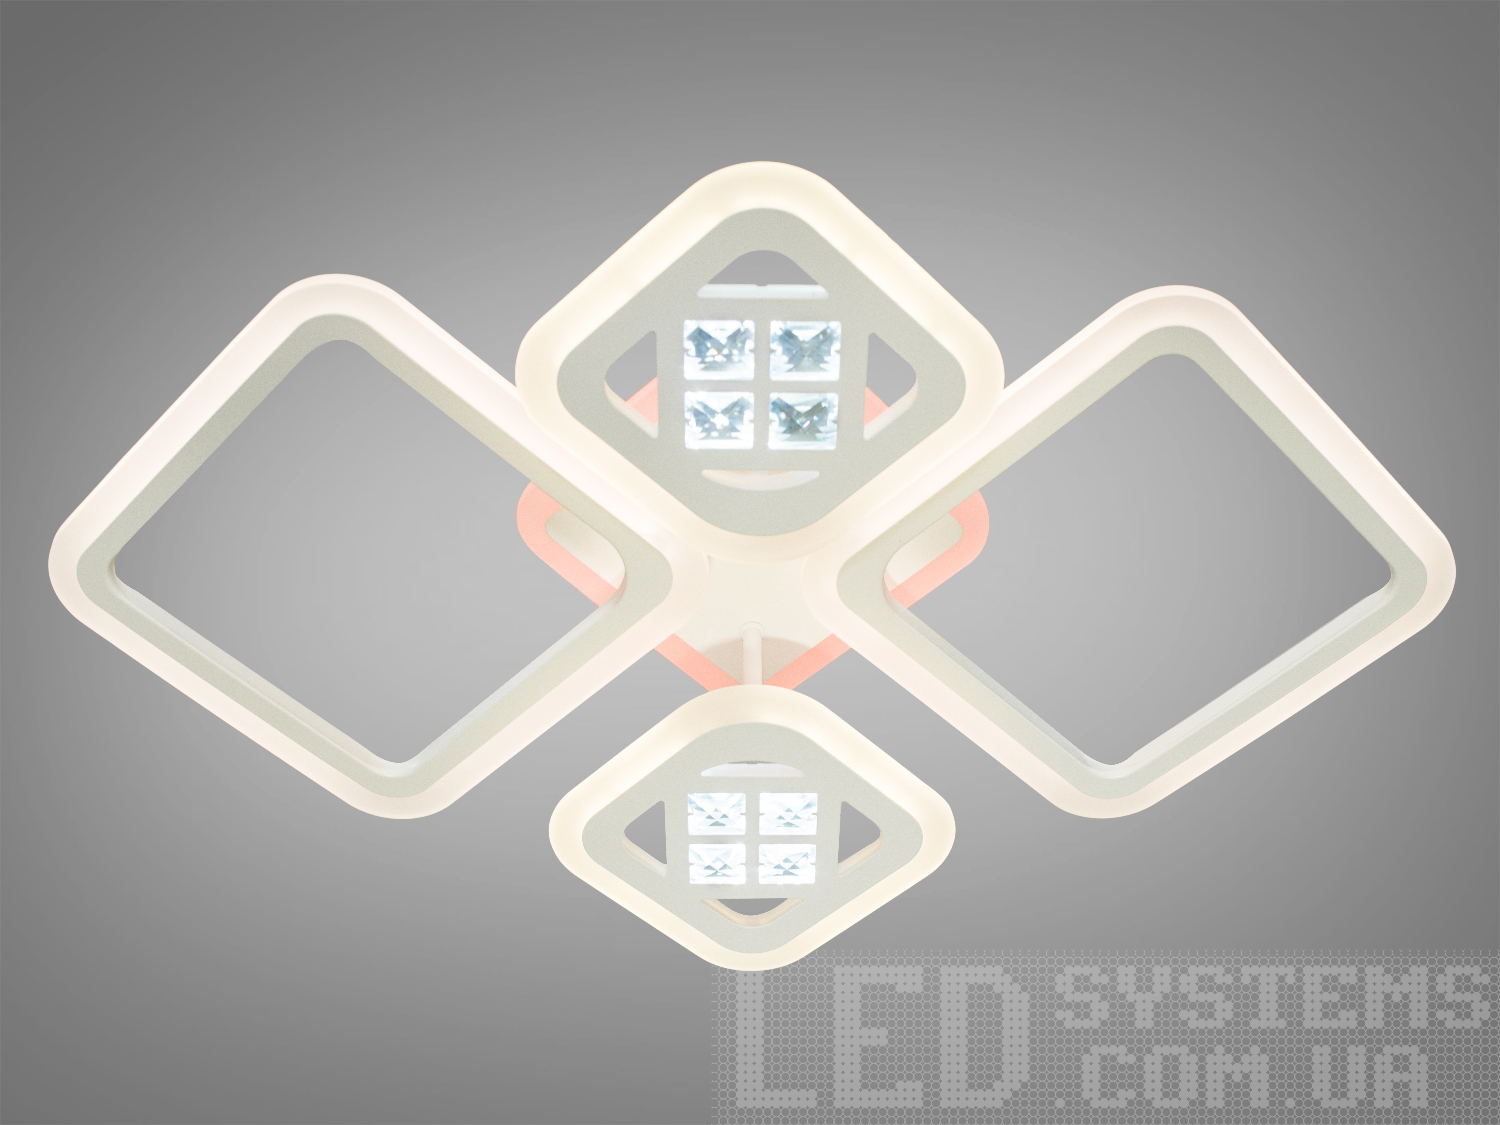 Акрилова LED-люстра в коридор з пультом, з підсвічуванням LED, з димером підходить на площу приміщення приблизно 10кв.м. Застосовується для зали, вітальні, спальні, кухні, коридору, дитячої, оскільки відсутні скляні елементи.
Світлодіодна люстра має кілька режимів: холодний 6000К, нейтральний 4100К, теплий 3200К, включення-вимикання, кольорове підсвічування, змішаний режим. Люстра має електронний димер, що дозволяє регулювати яскравість люстри від 5% до 100% за допомогою пульта, що входить до комплекту.
Кріпиться до стелі будь-якого типу універсальним кріпленням на монтажну планку.